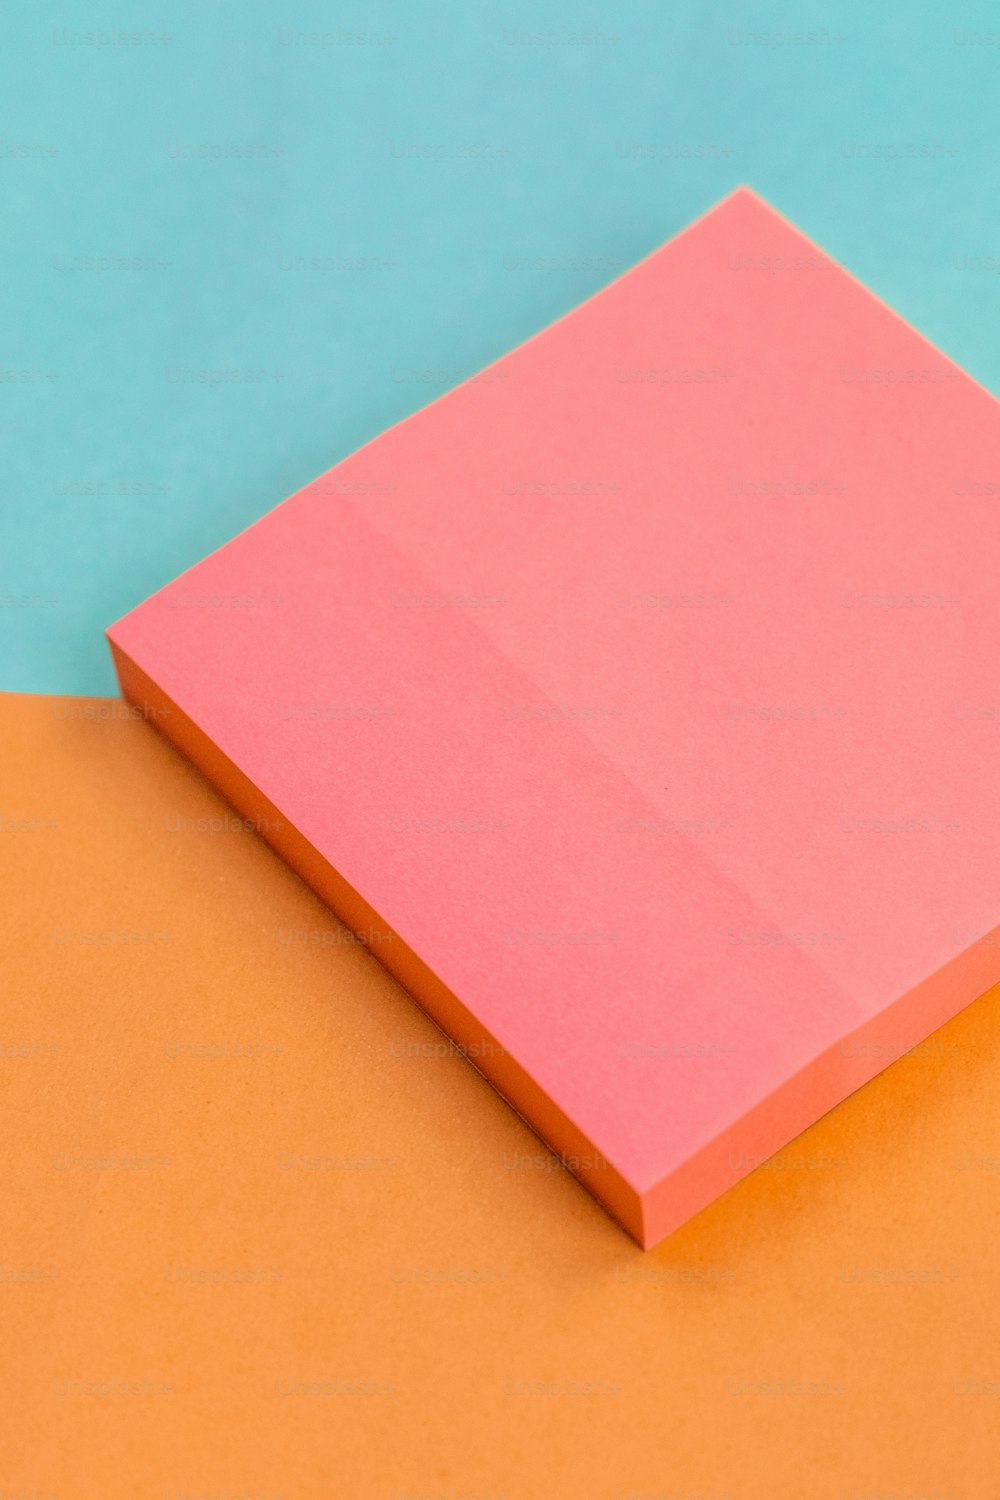 Un trozo de papel rosa sentado encima de una superficie naranja y azul